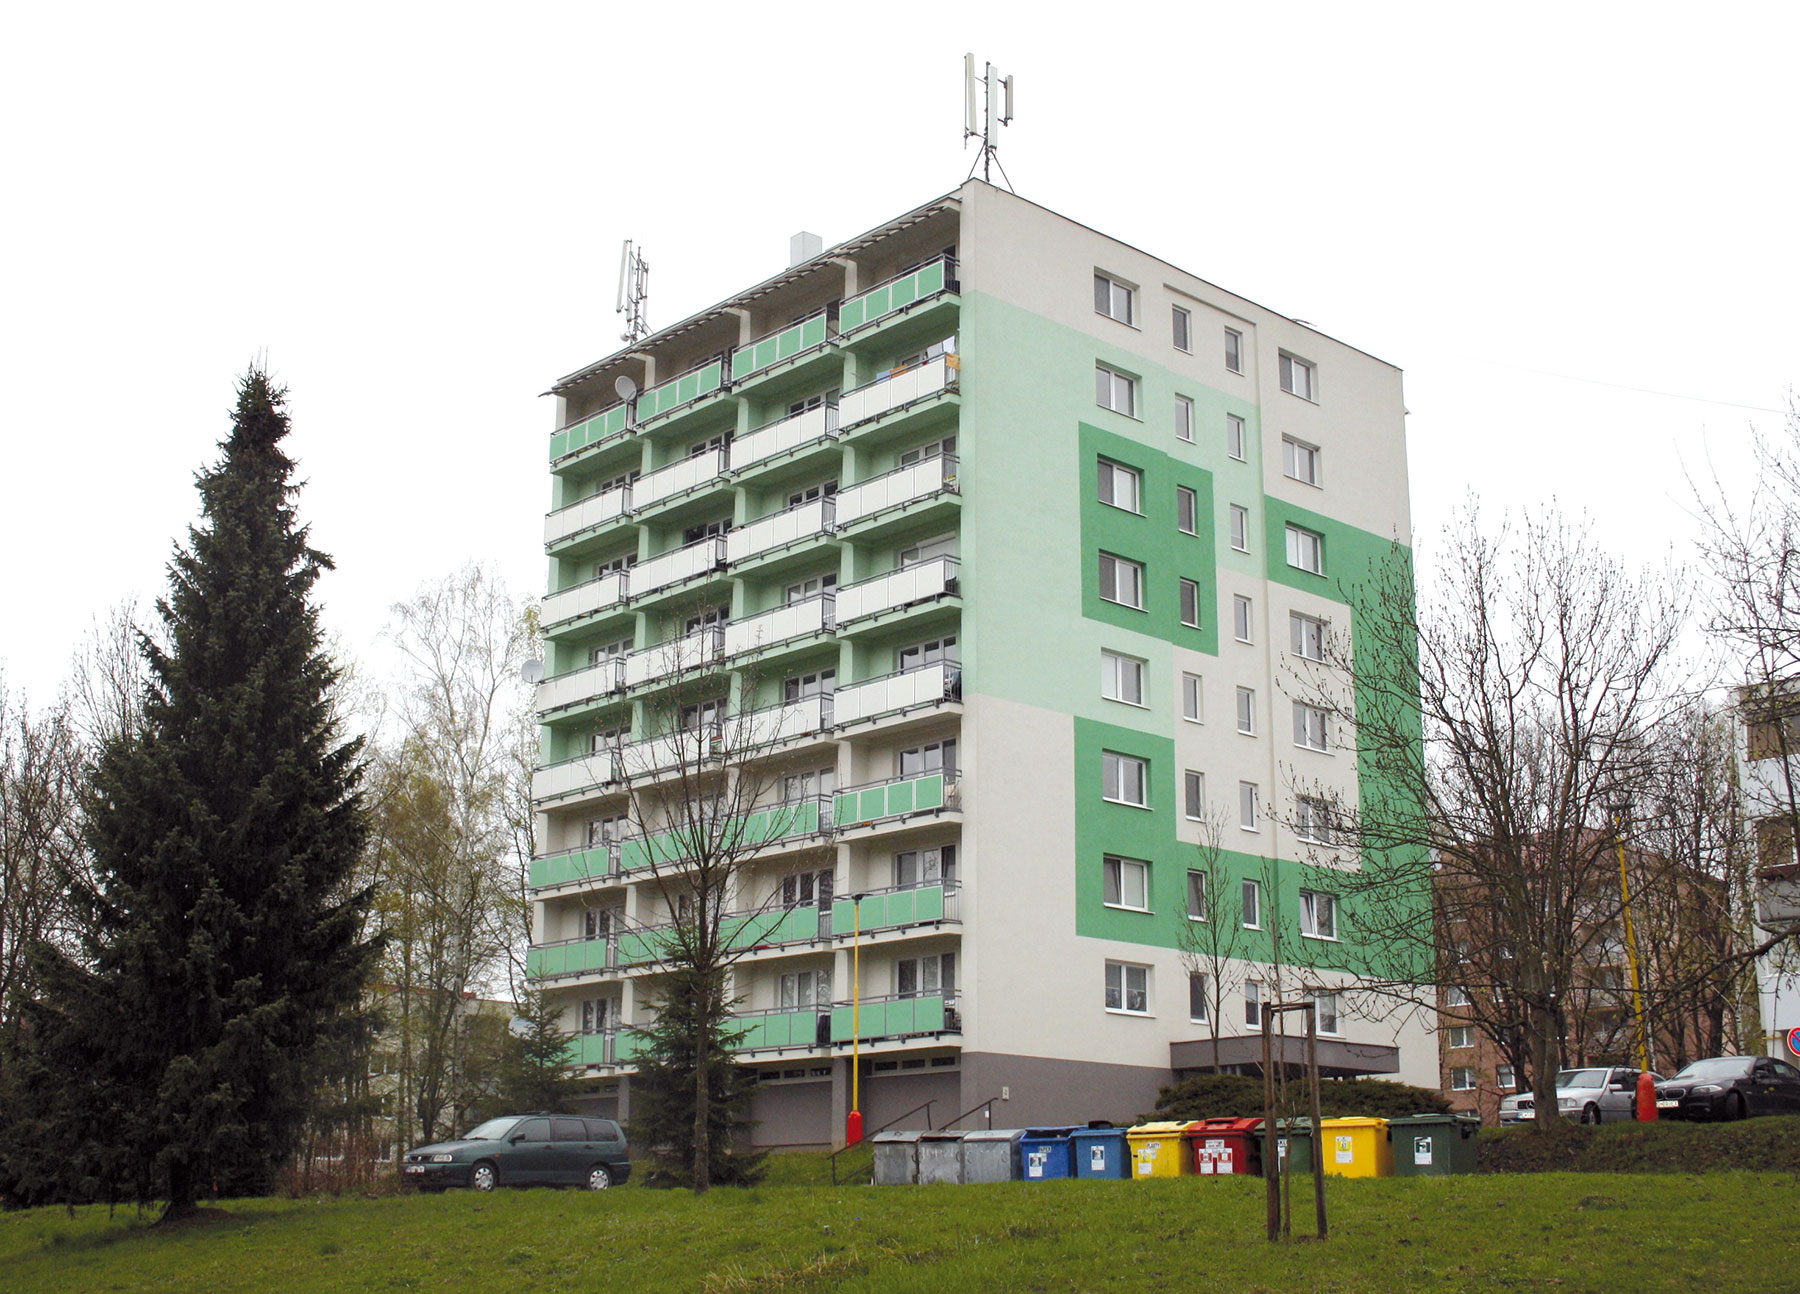 1. miesto v kategórii C v roku 2017 získal projekt v meste Medzilaborce – bytový dom 24 b. j. – II. etapa.